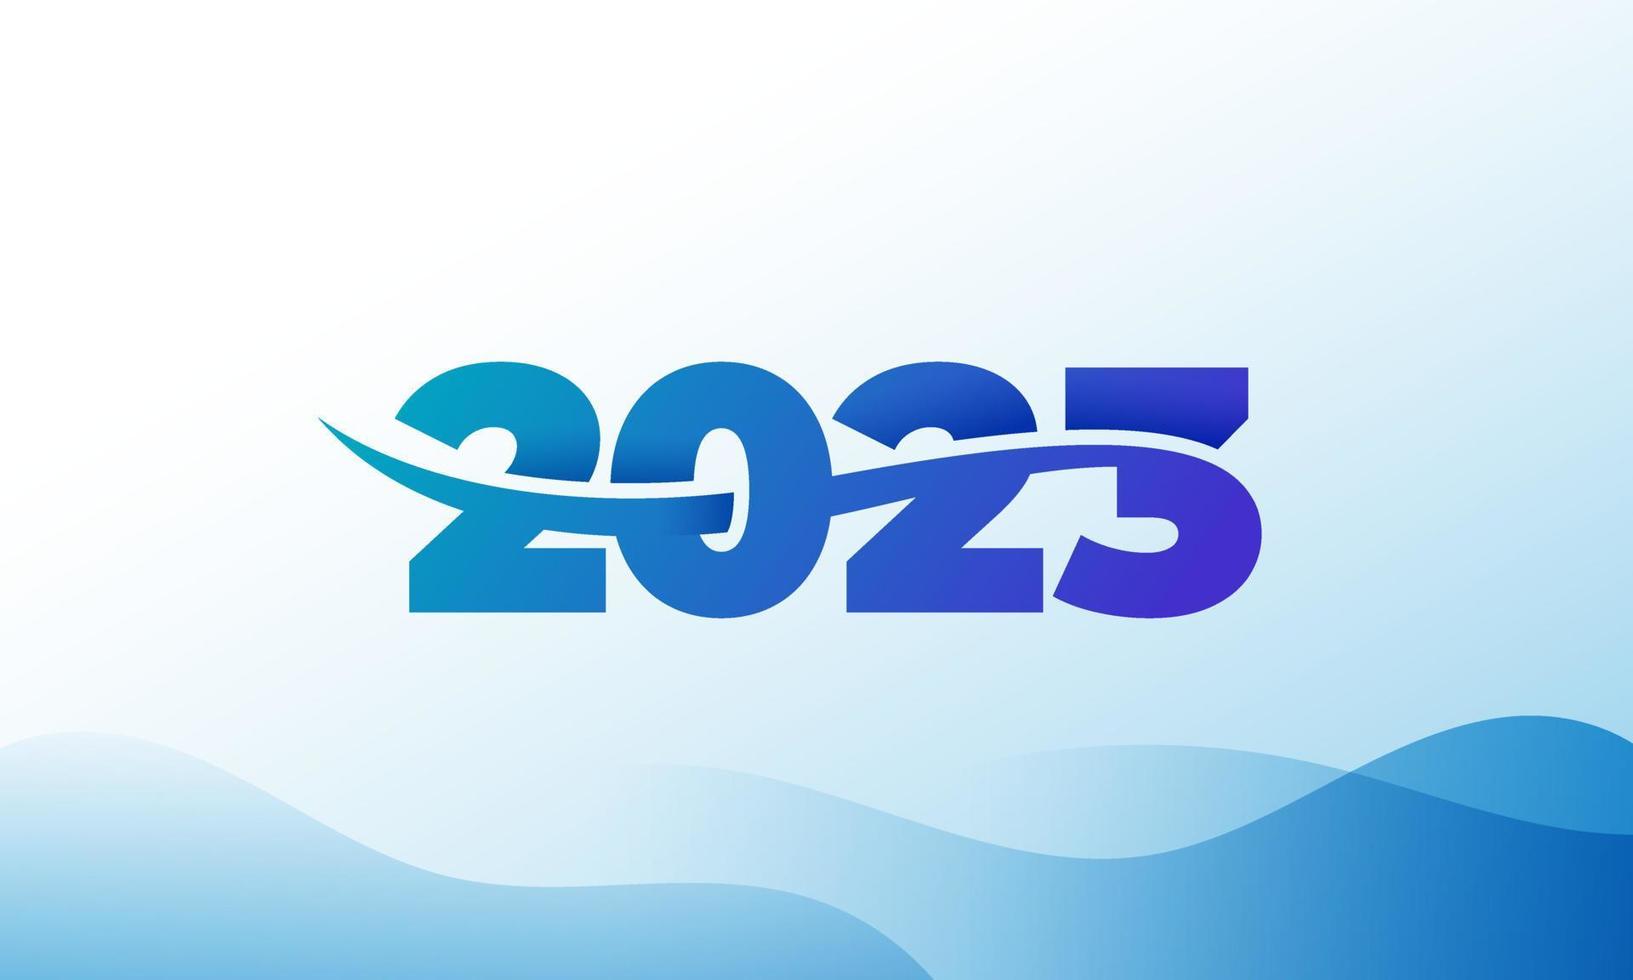 2023 ny år modern färgrik illustration med enkel former för kalender eller hälsning kort vektor